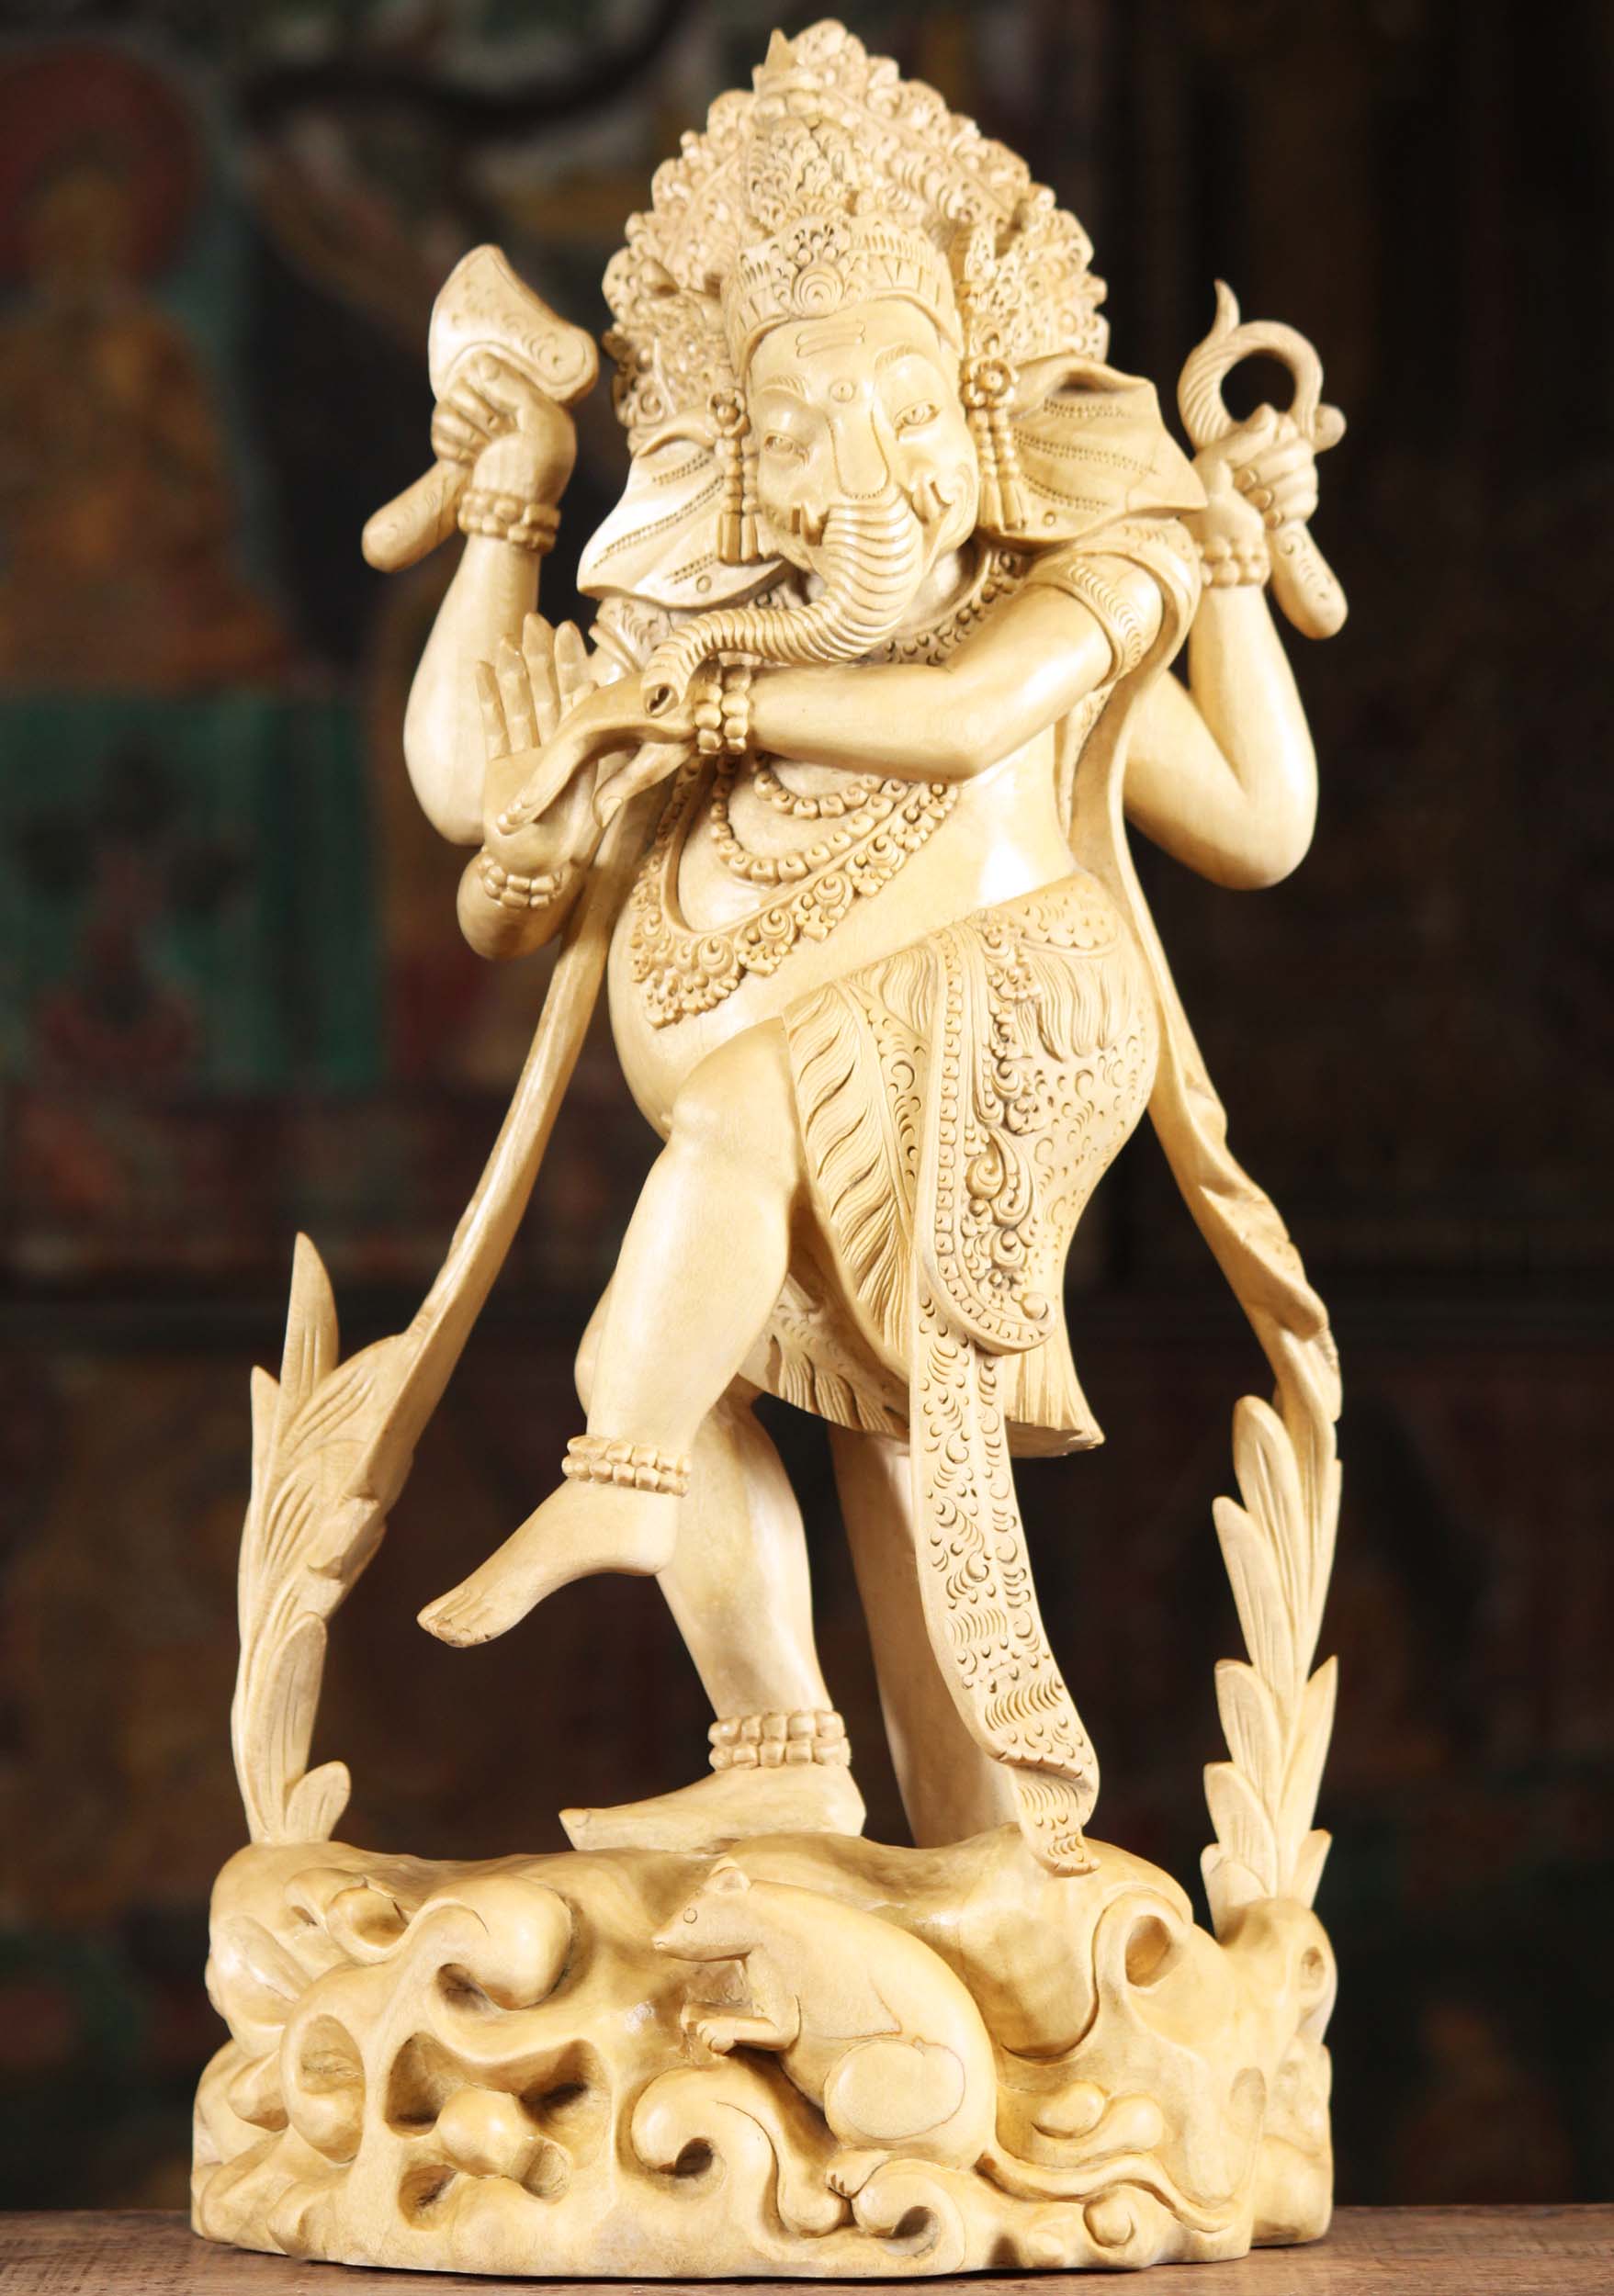 Natraj Lord Shiva Tandava Dance Posed Stock Photo 1643536708 | Shutterstock